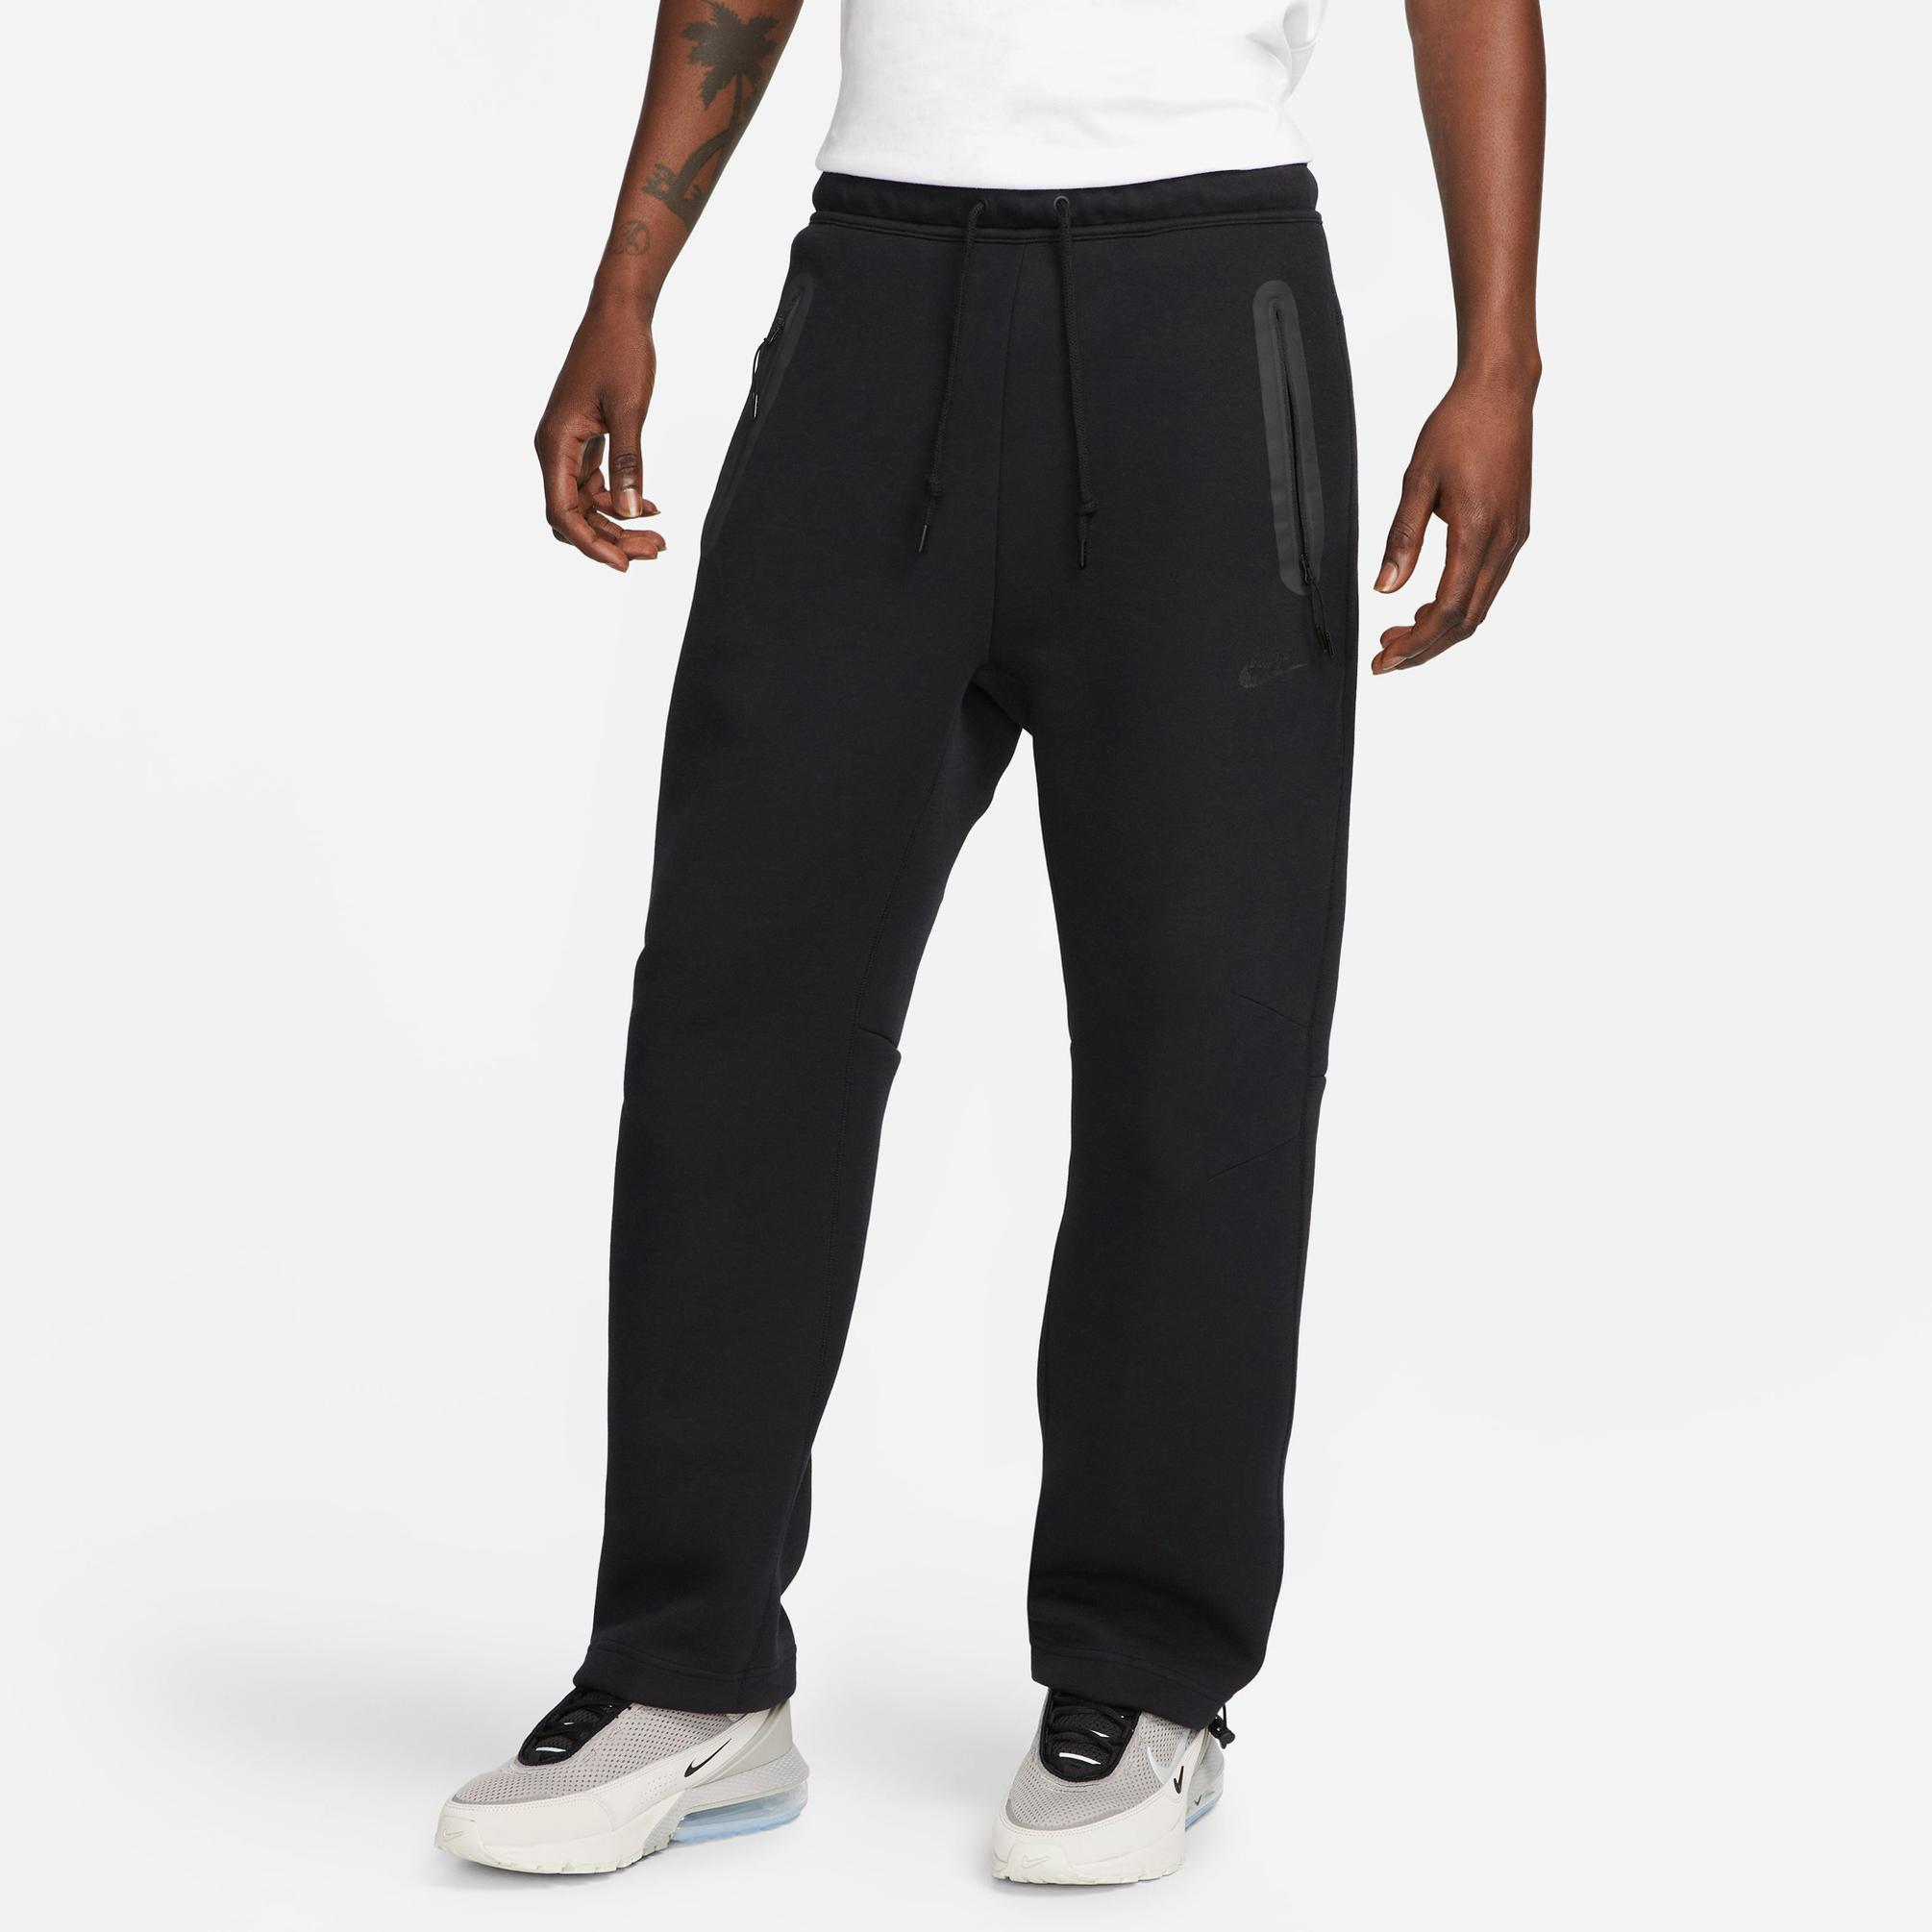  Nike Sportswear Tech Fleece Erkek Siyah Eşofman Altı